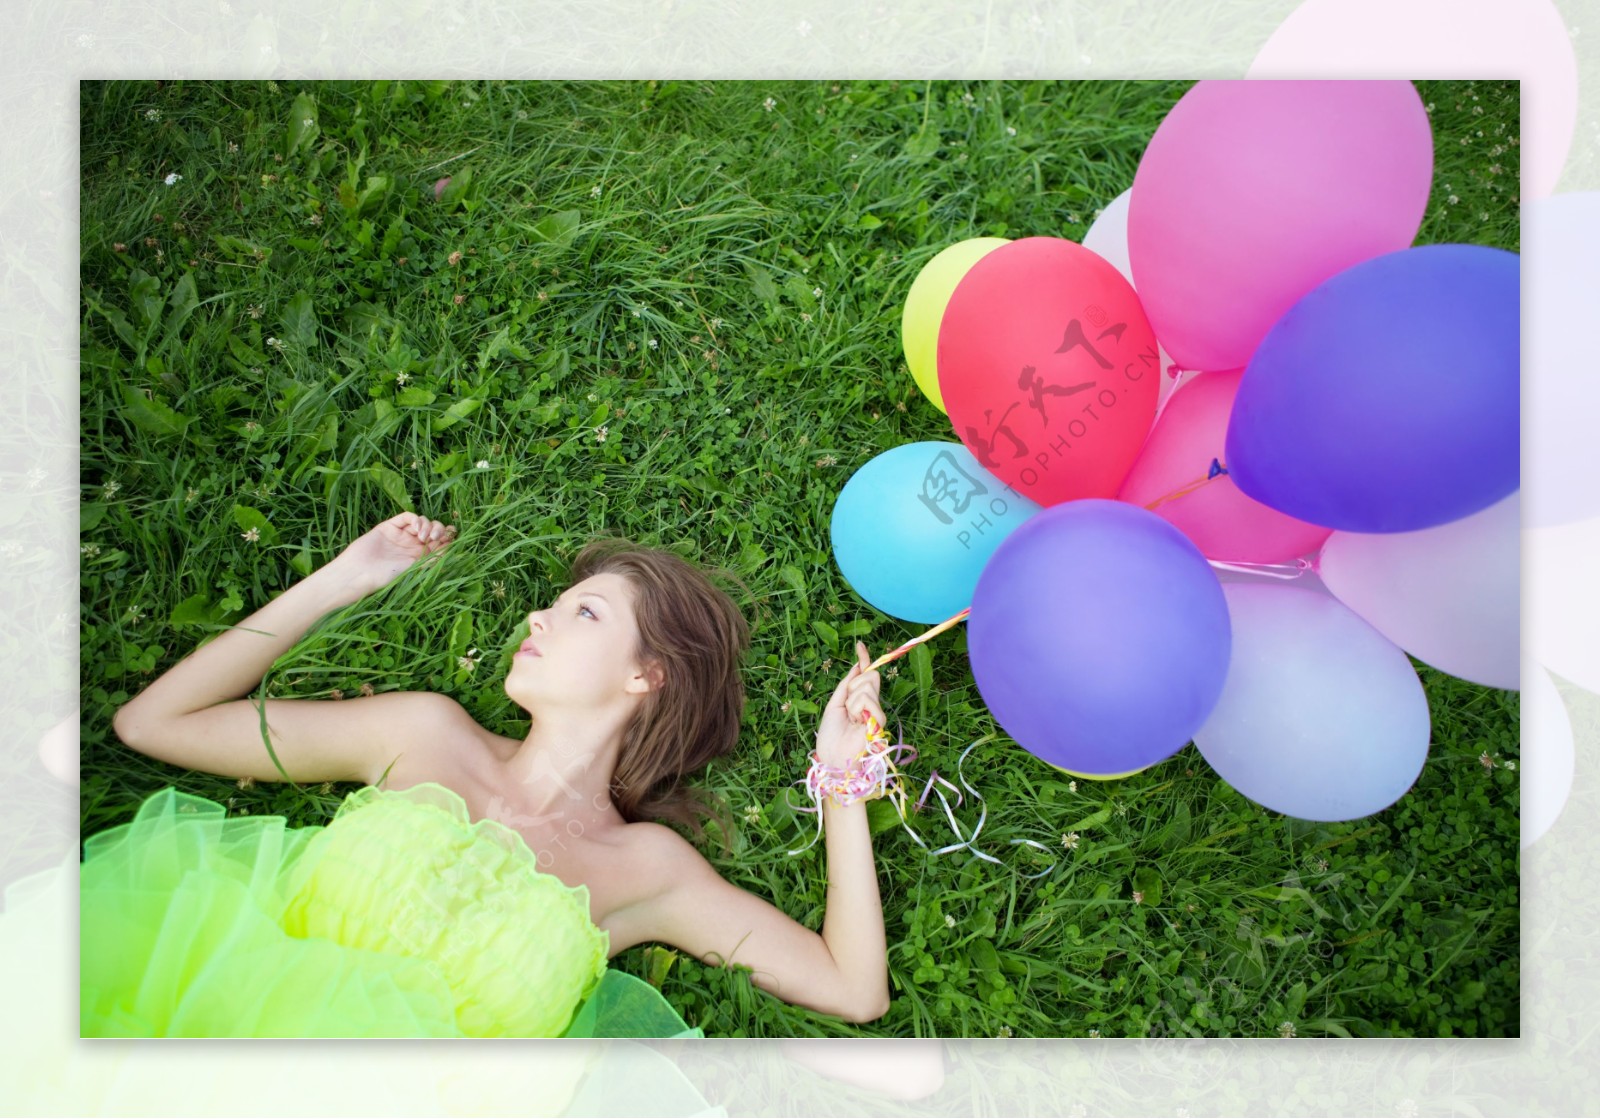 躺在草地上的女孩和气球图片